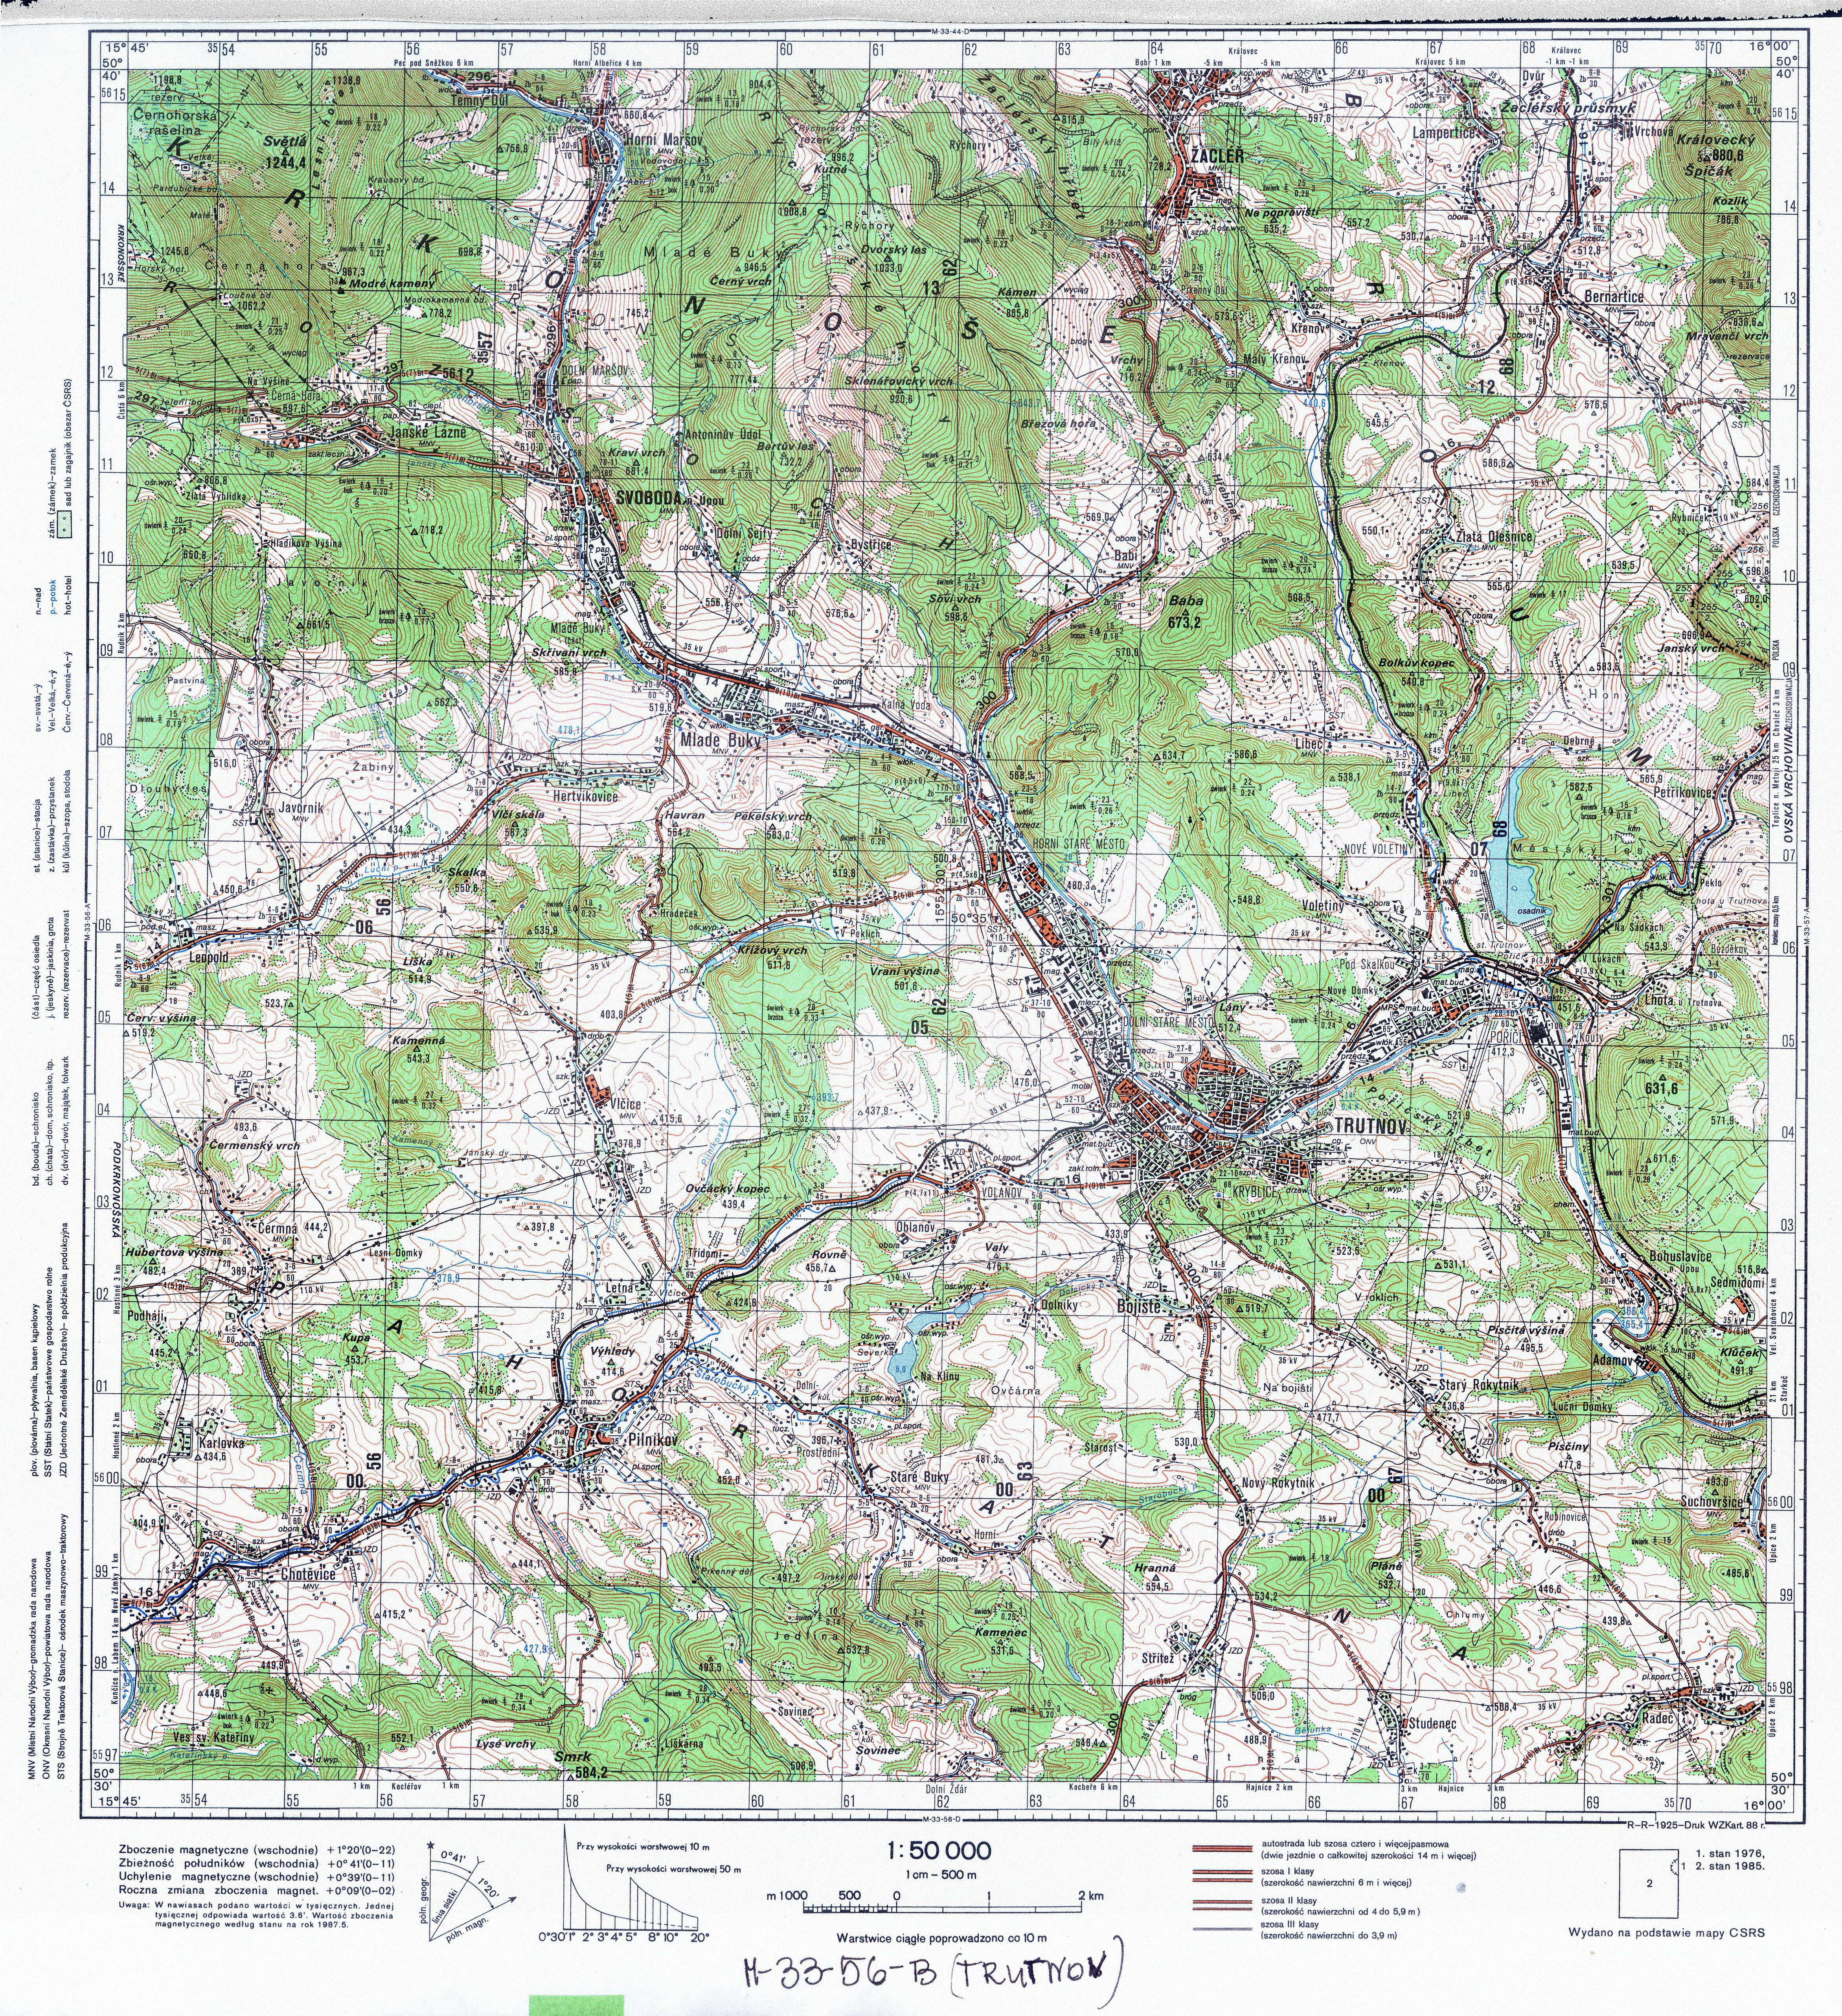 Mapy topograficzne LWP 1_50 000 - M-33-56-B_TRUTNOV_1988.jpg